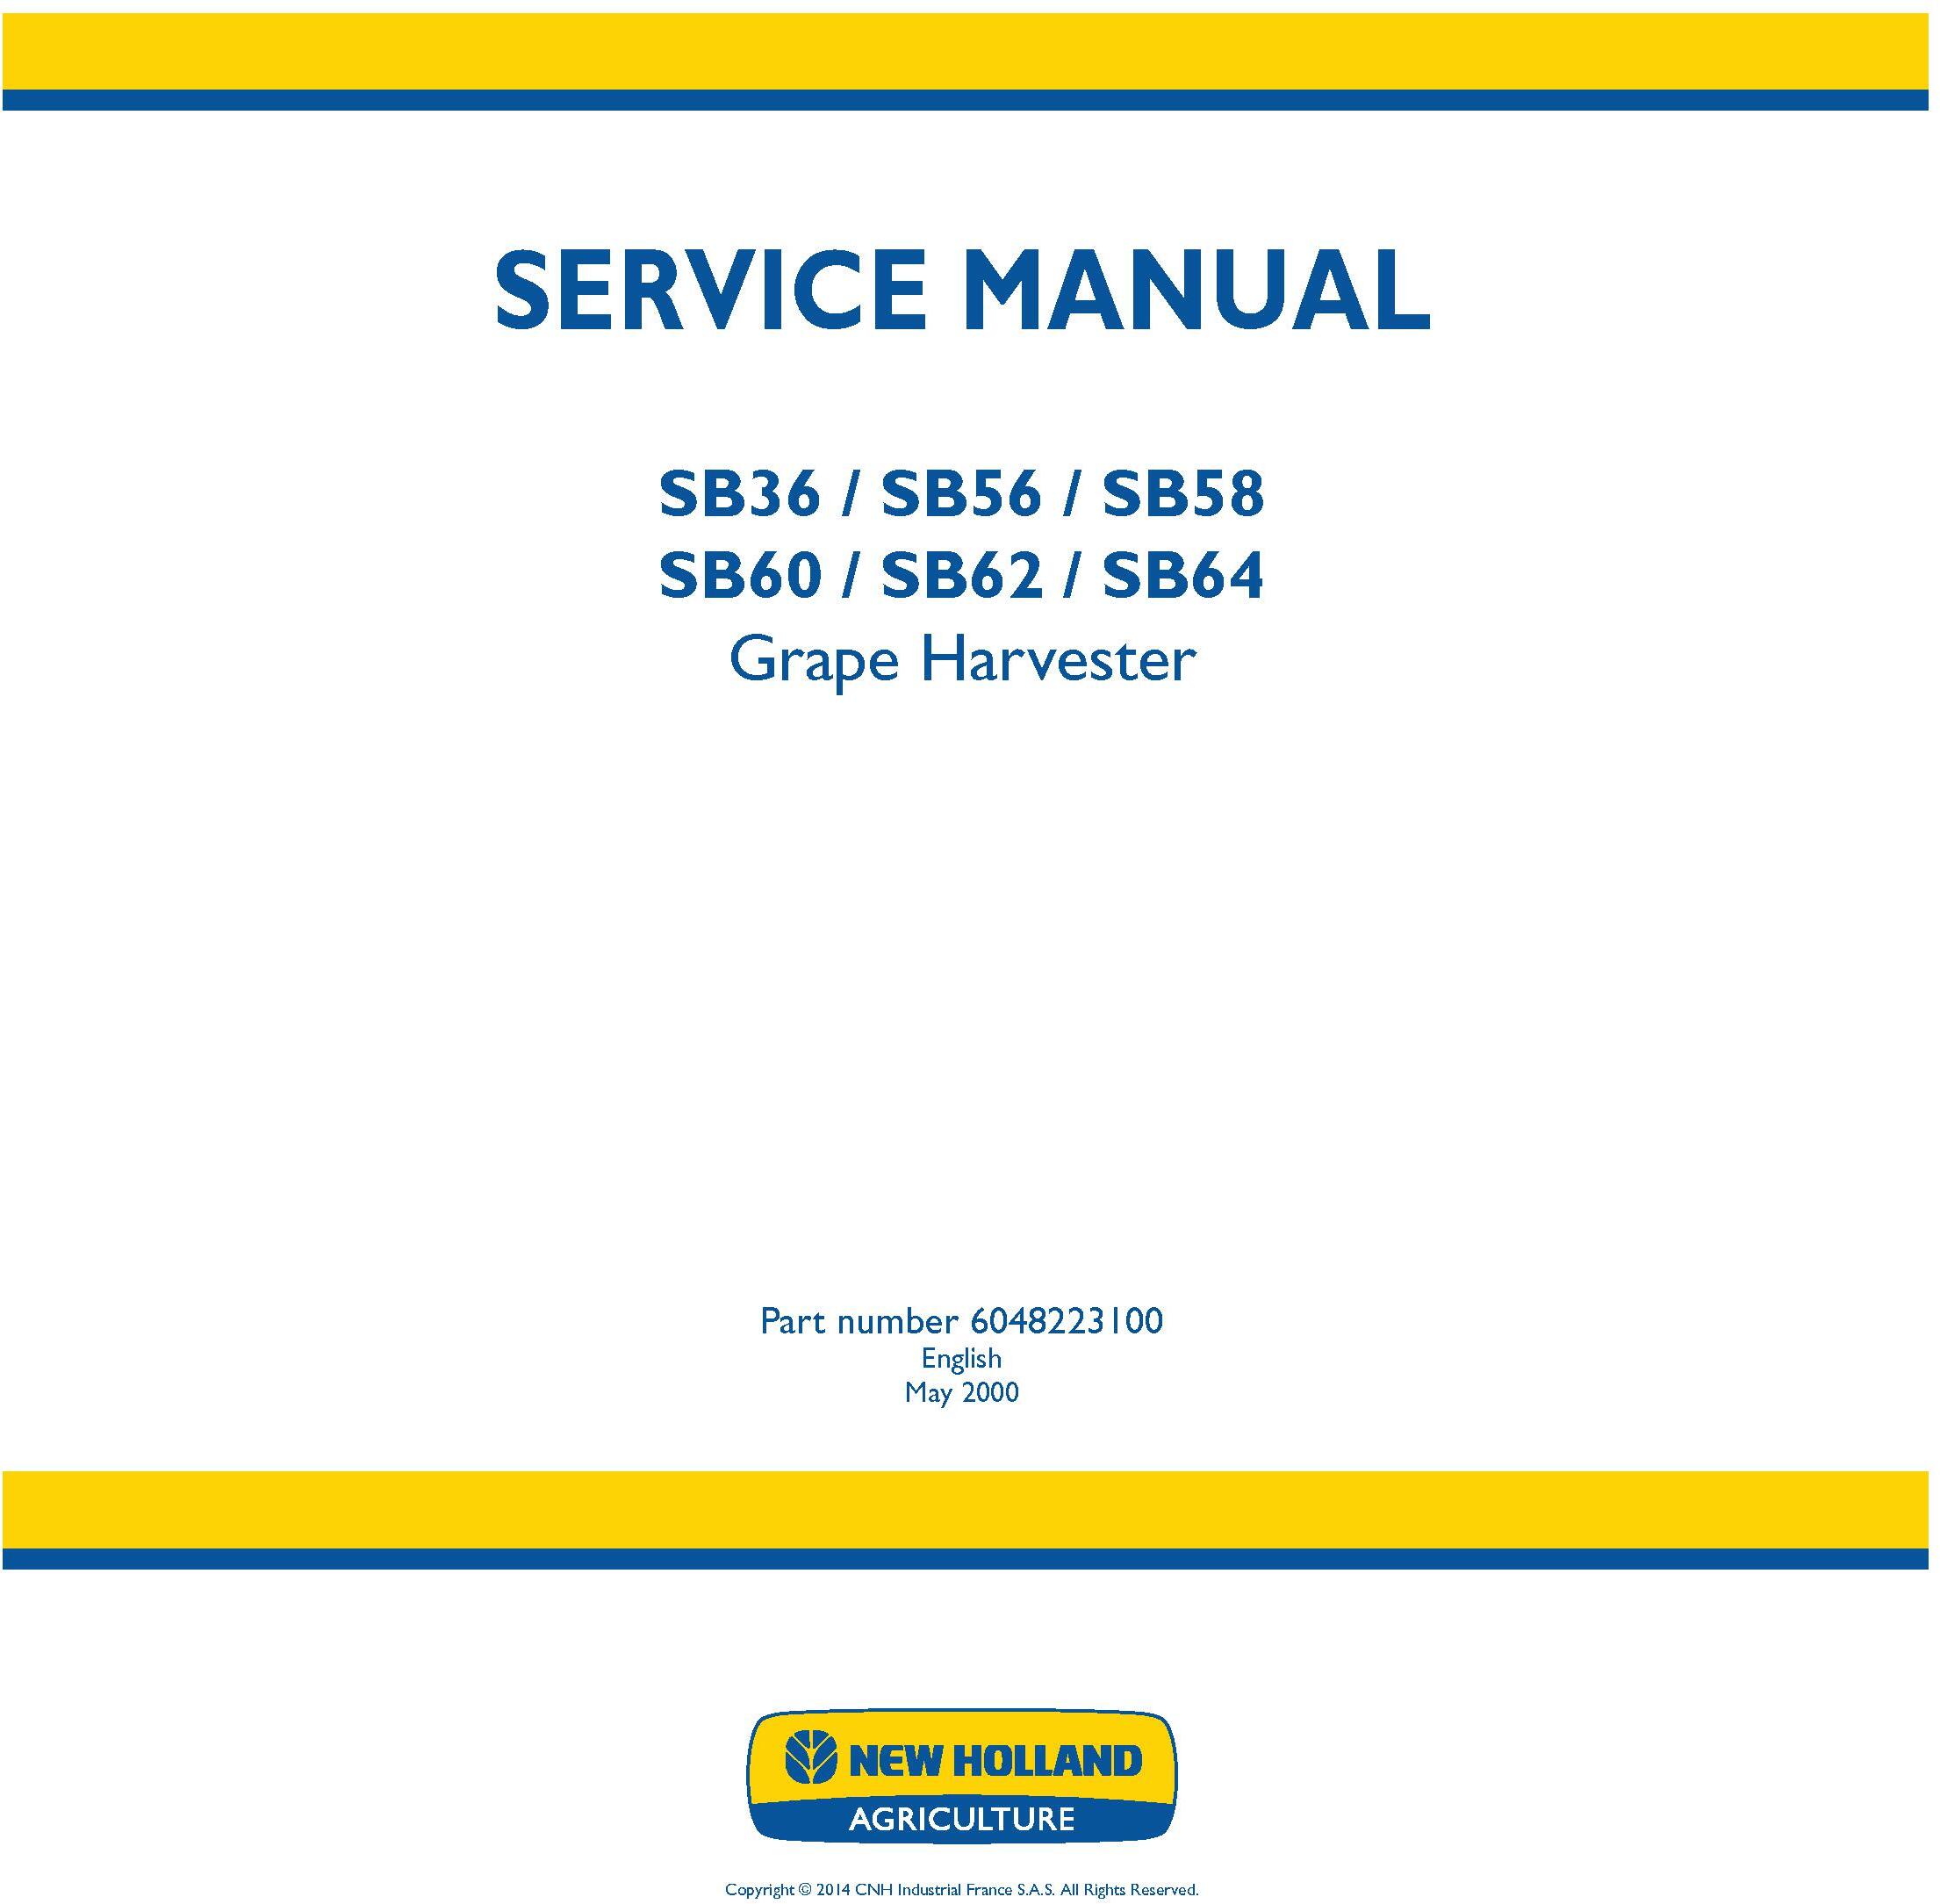 New Holland SB36, SB56, SB58, SB60, SB62, SB64 Grape Harvester Service Manual